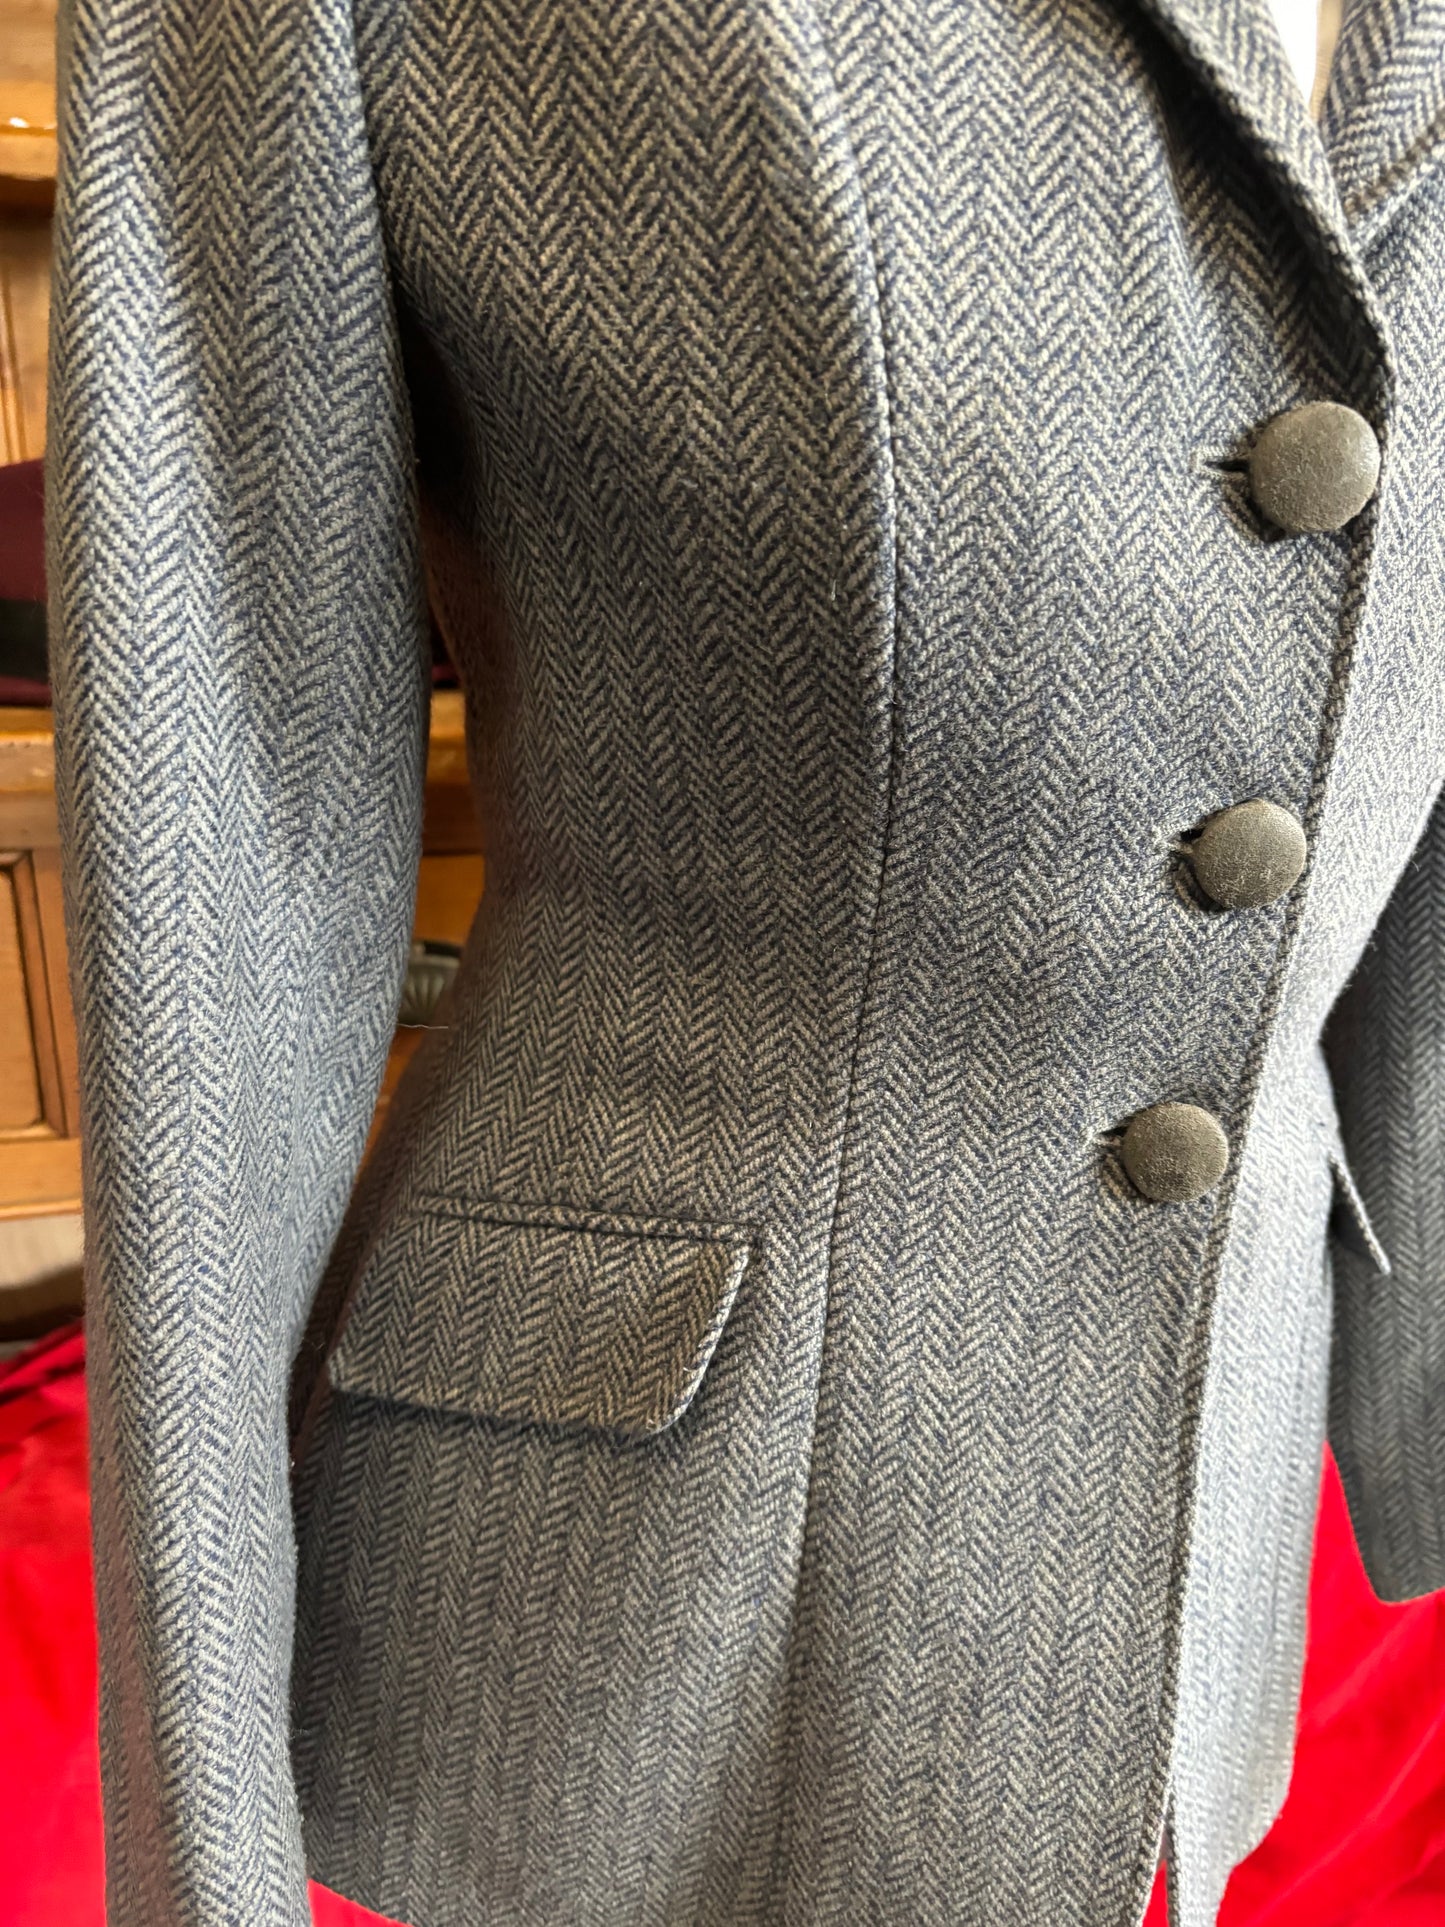 Caldene blue tweed jacket Size 10 (34) FREE POSTAGE🔵